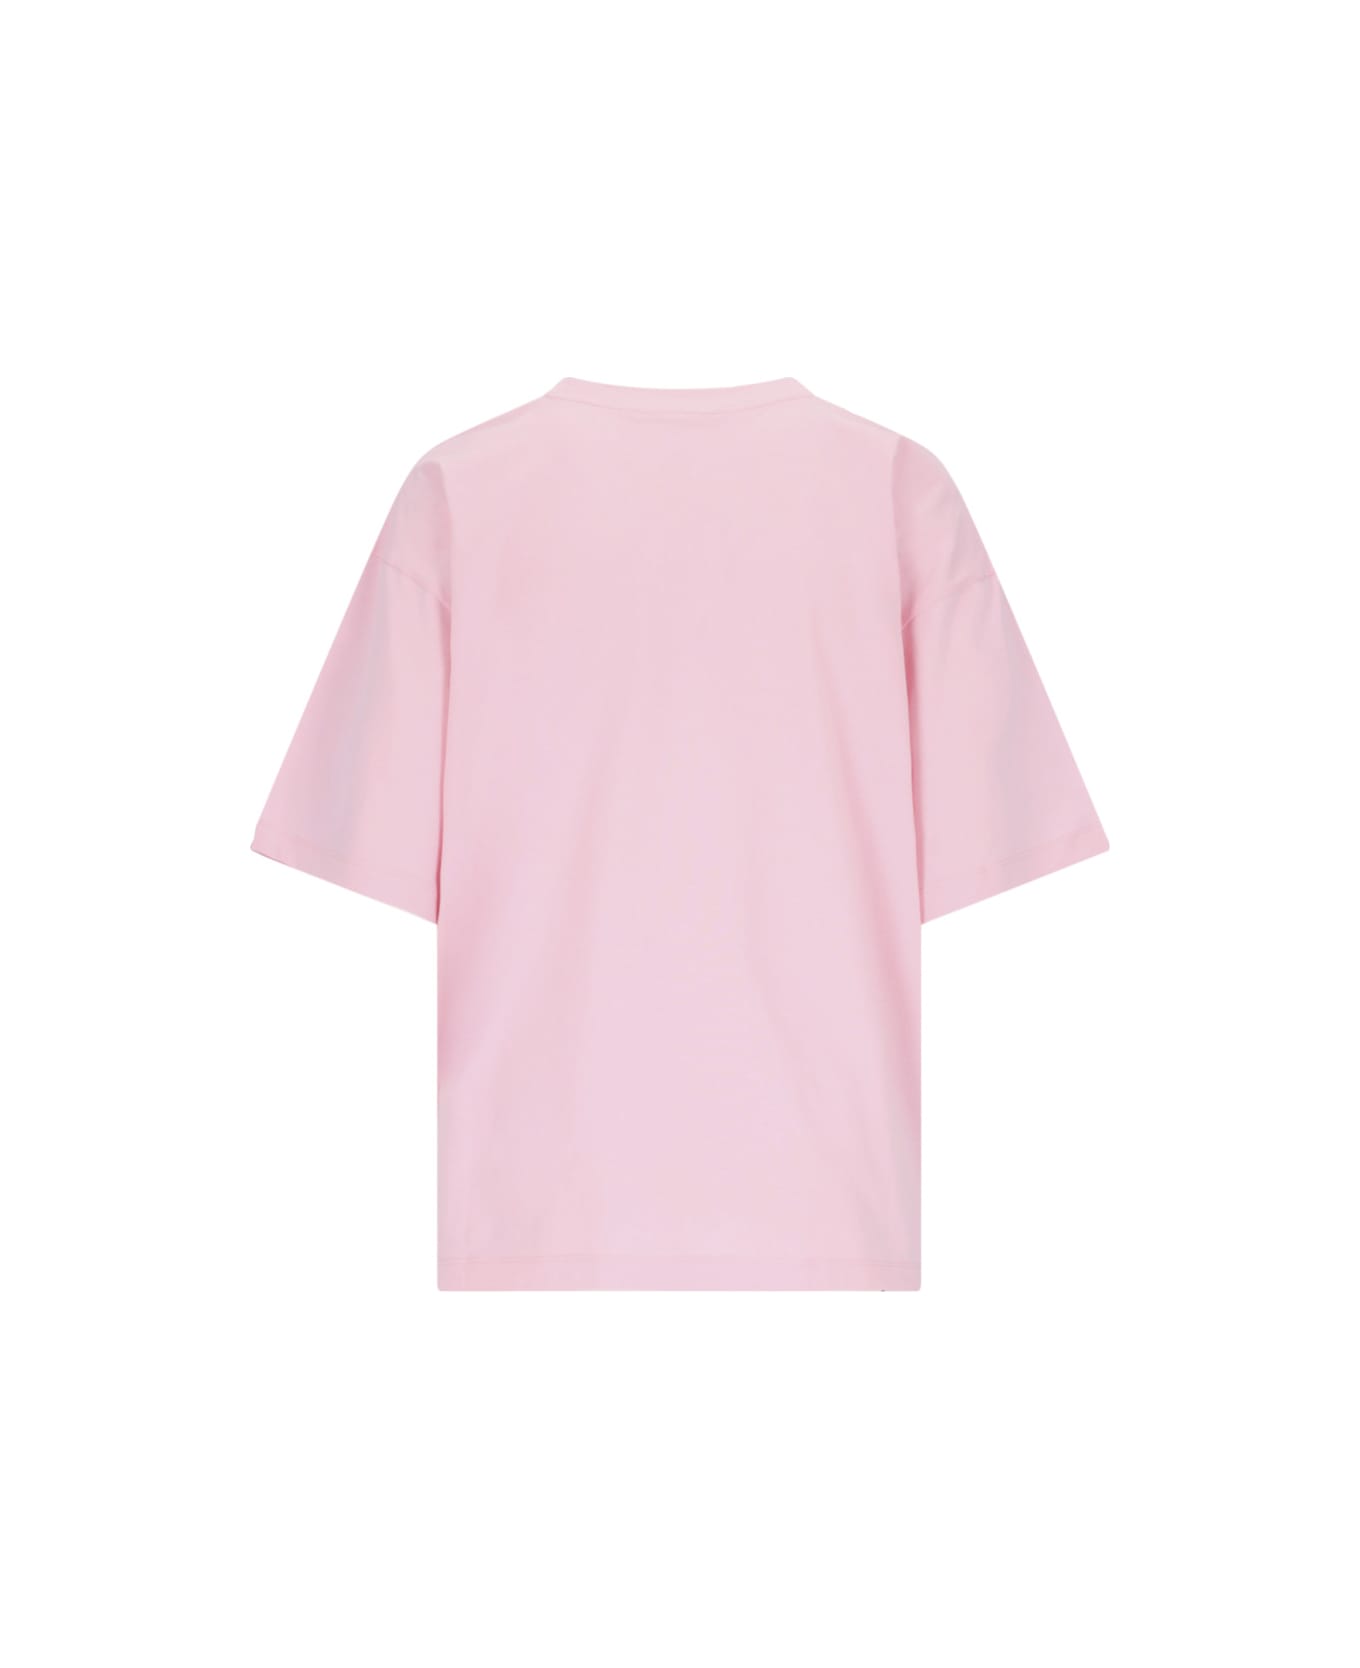 Marni Logo T-shirt - Pink Tシャツ